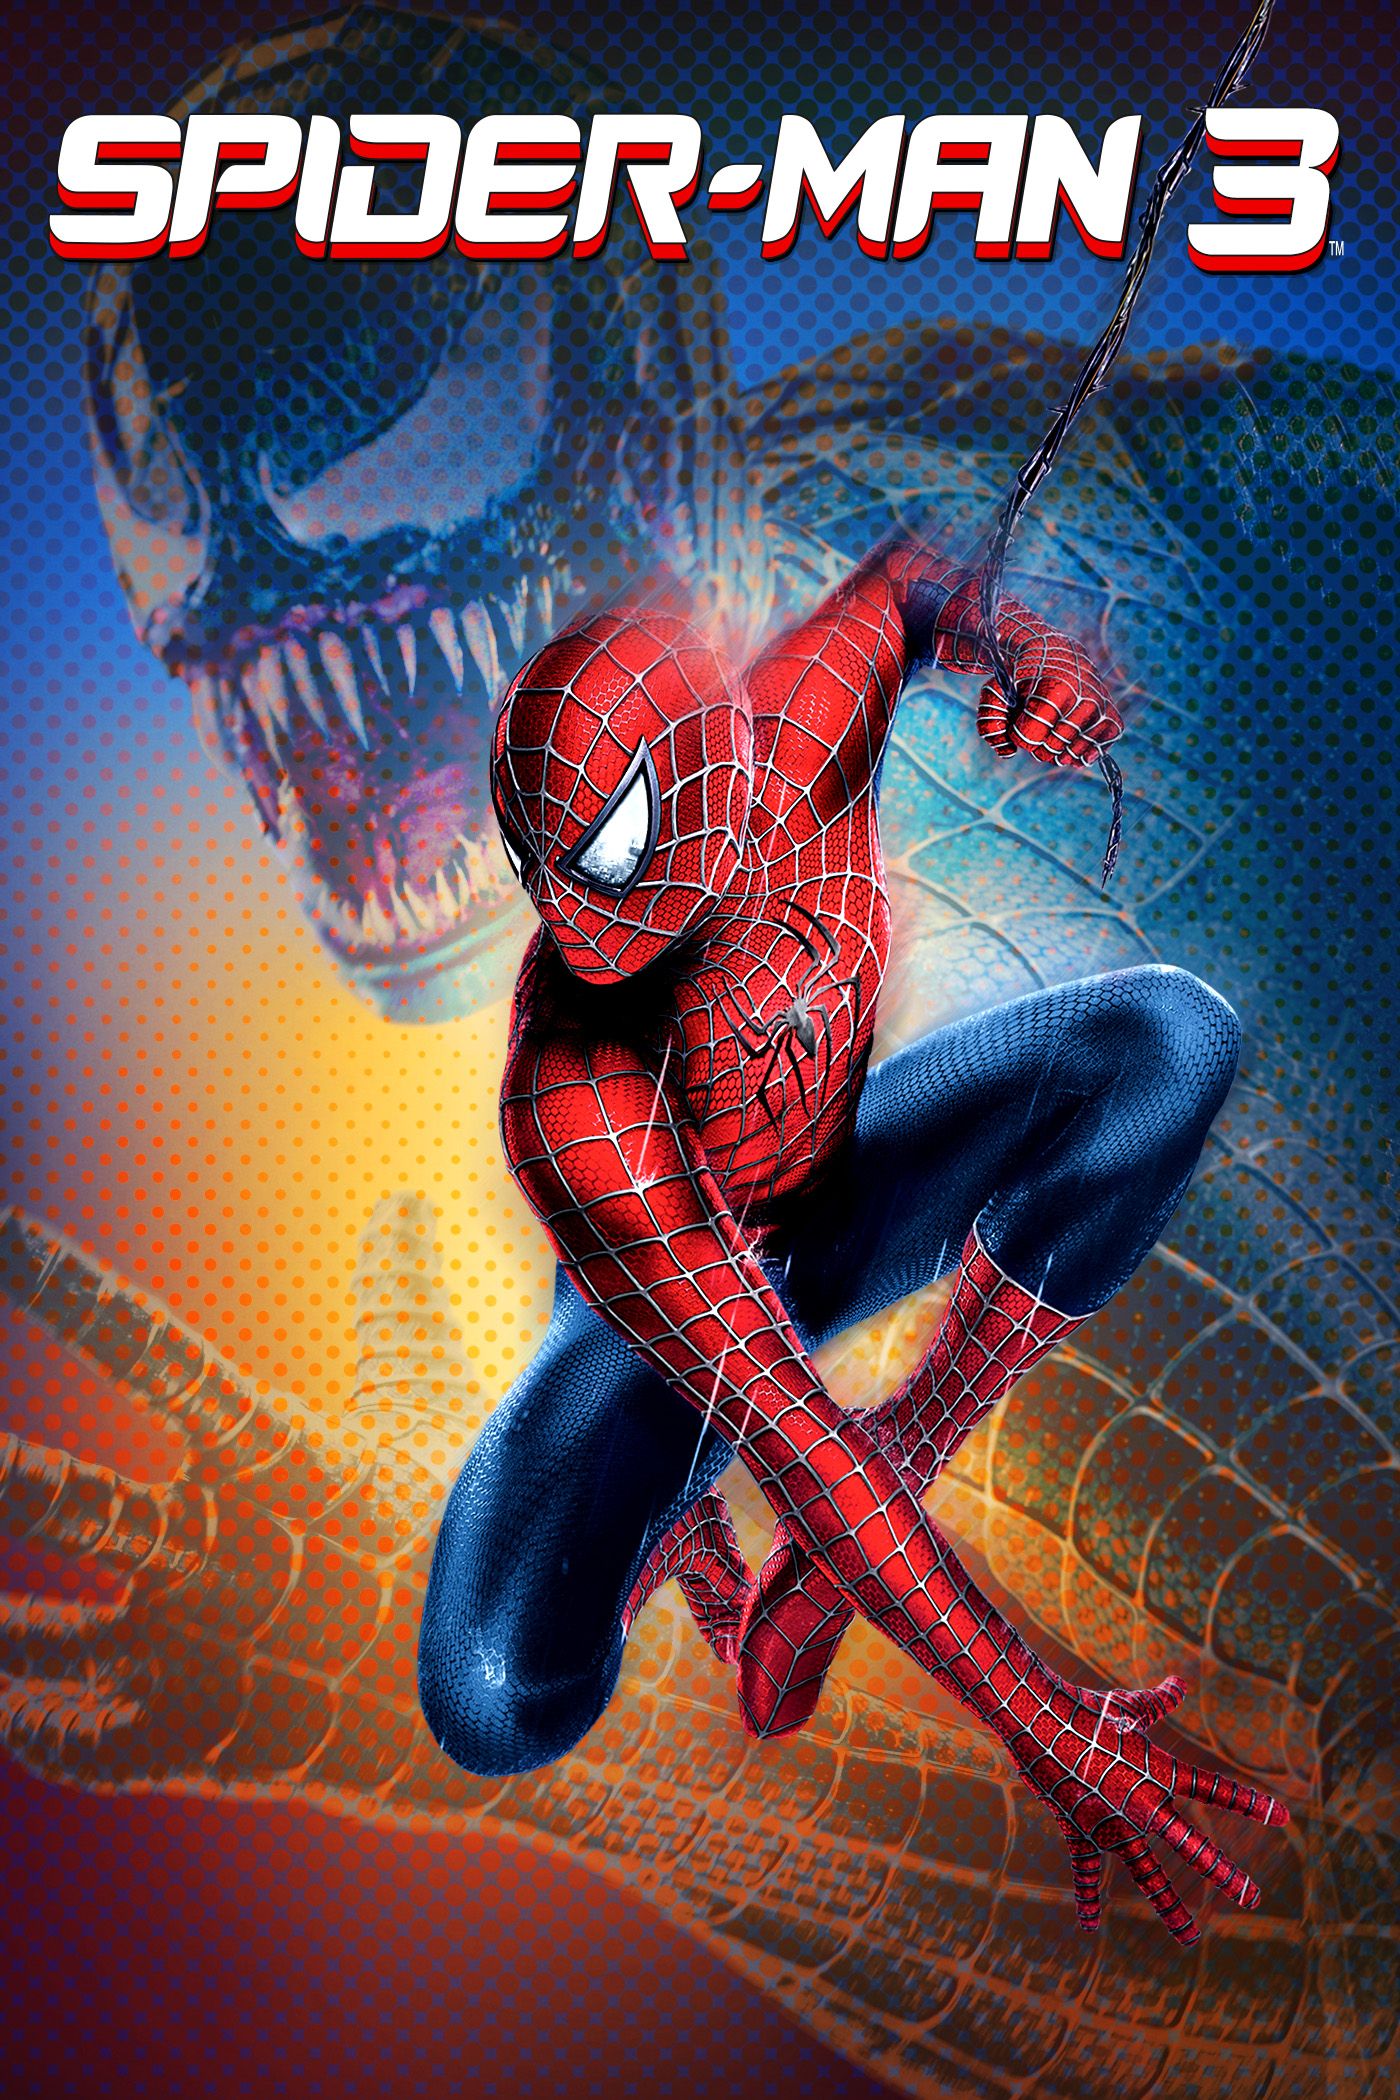 Spider man 3 full movie online free